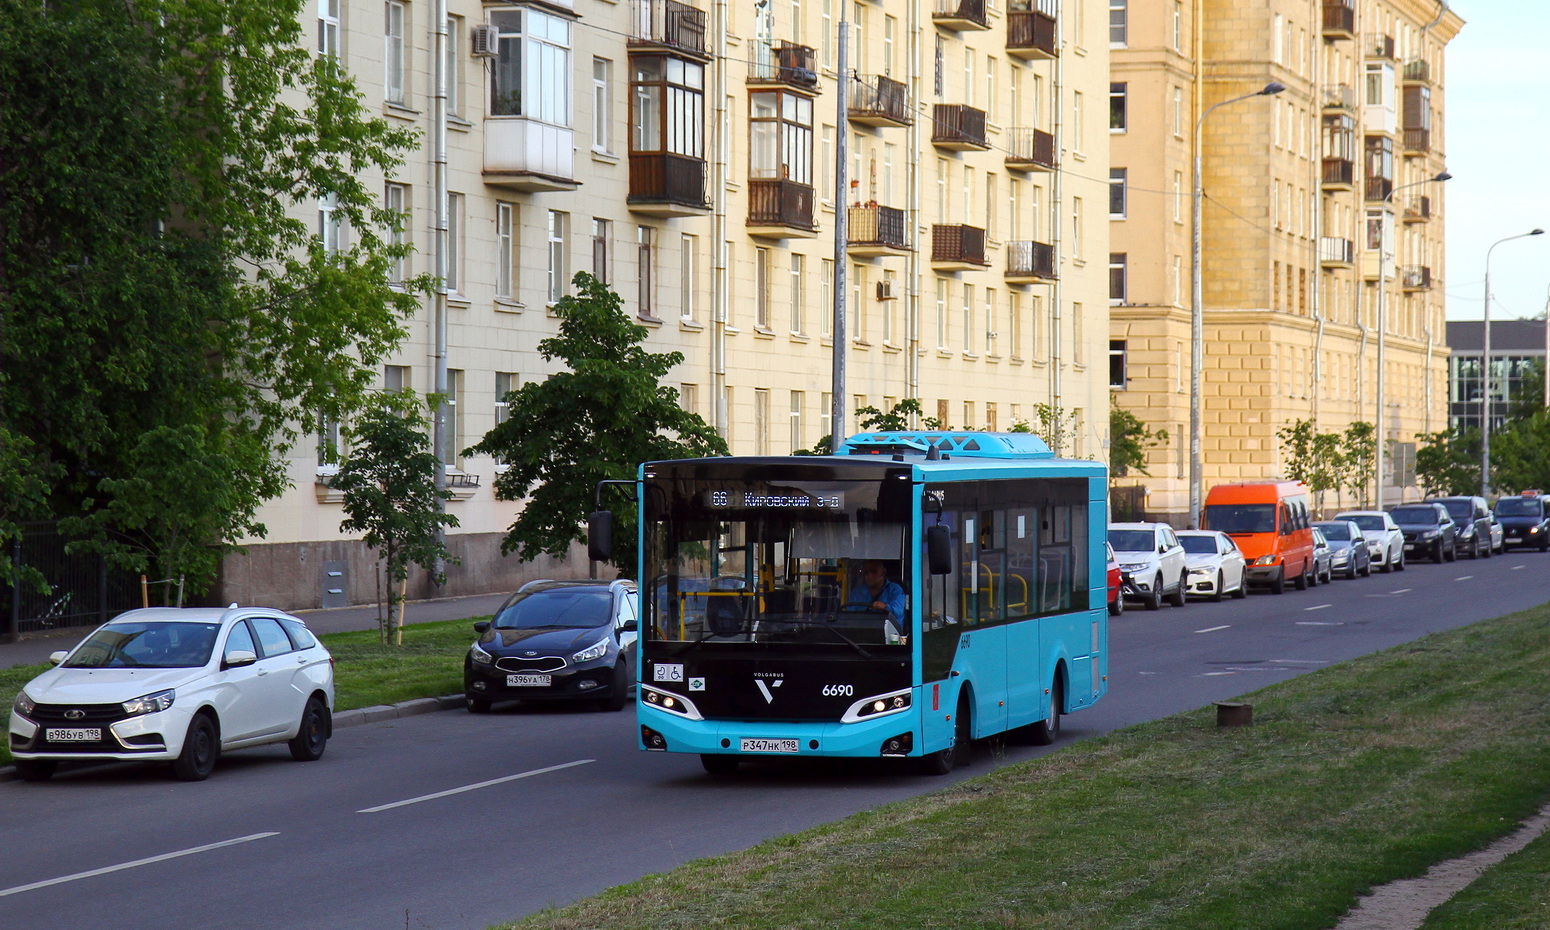 Sankt Peterburgas, Volgabus-4298.G4 (LNG) Nr. 6690